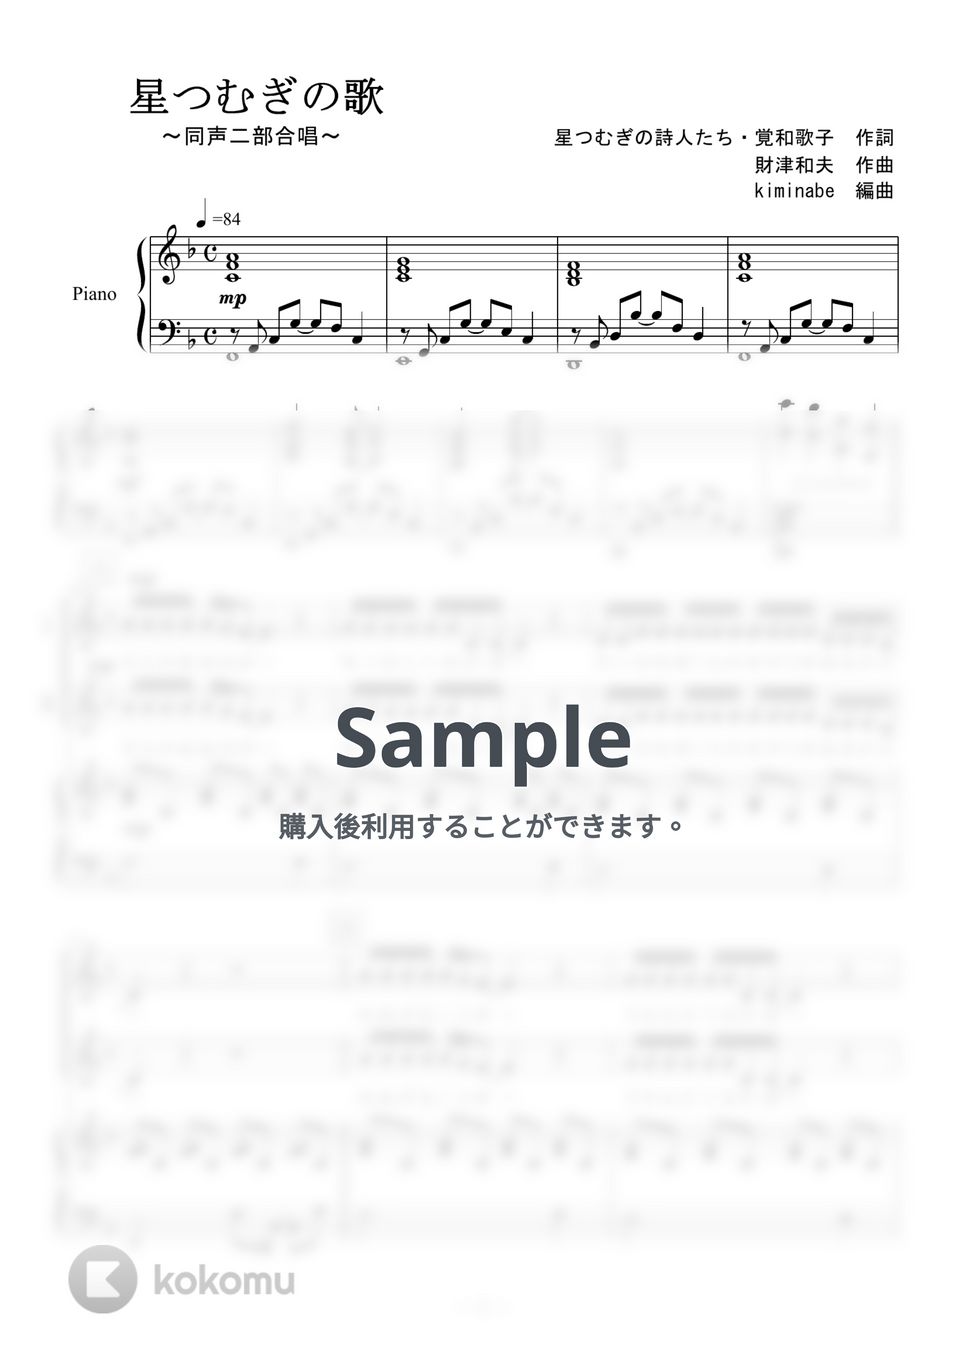 平原綾香 - 星つむぎの歌 (同声二部合唱／低調版) by kiminabe